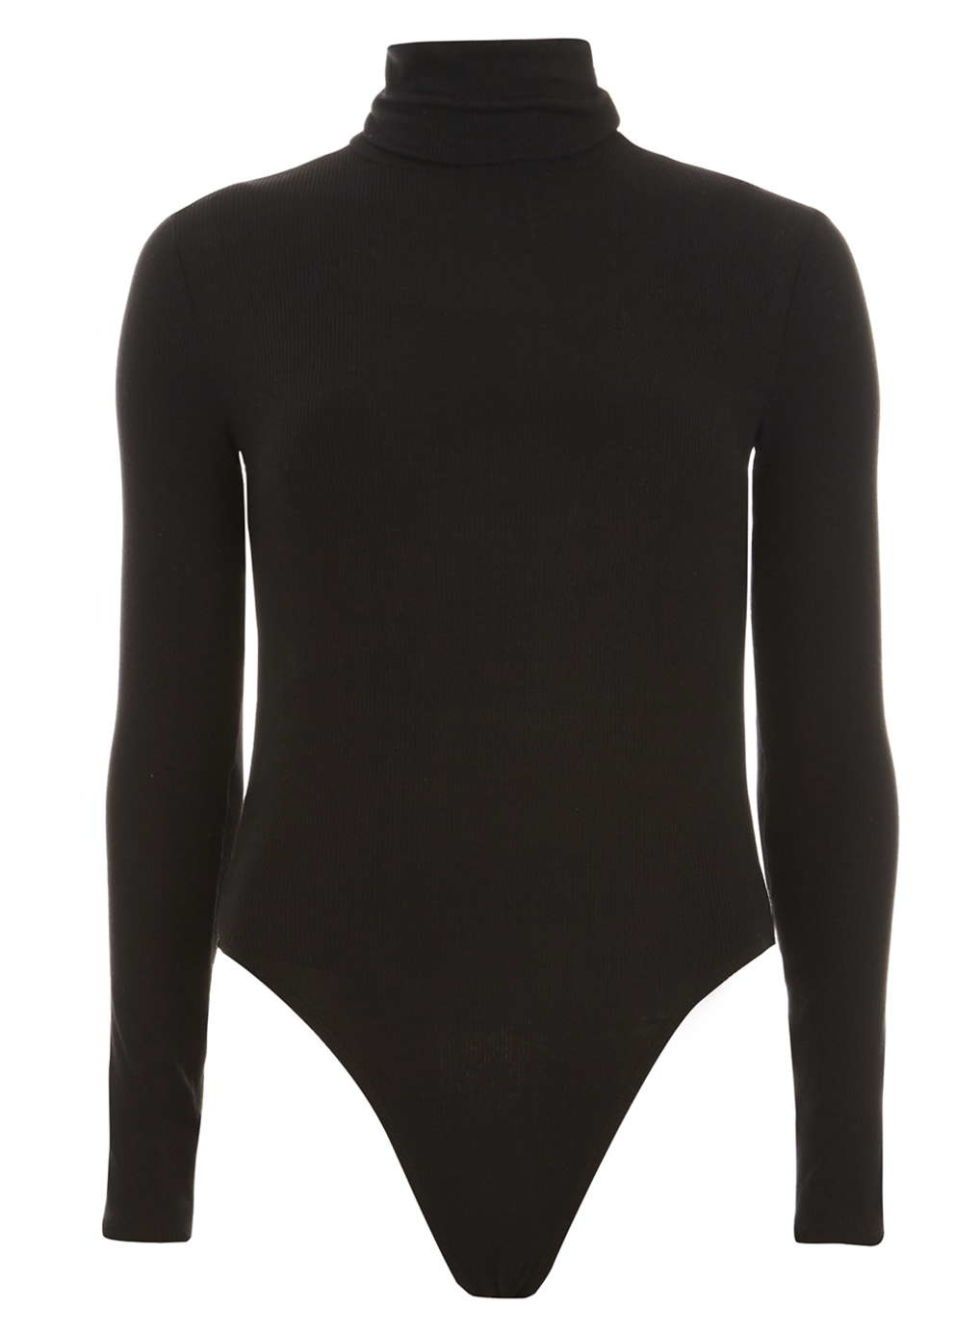 Sleek Style Black Funnel Neck Bodysuit